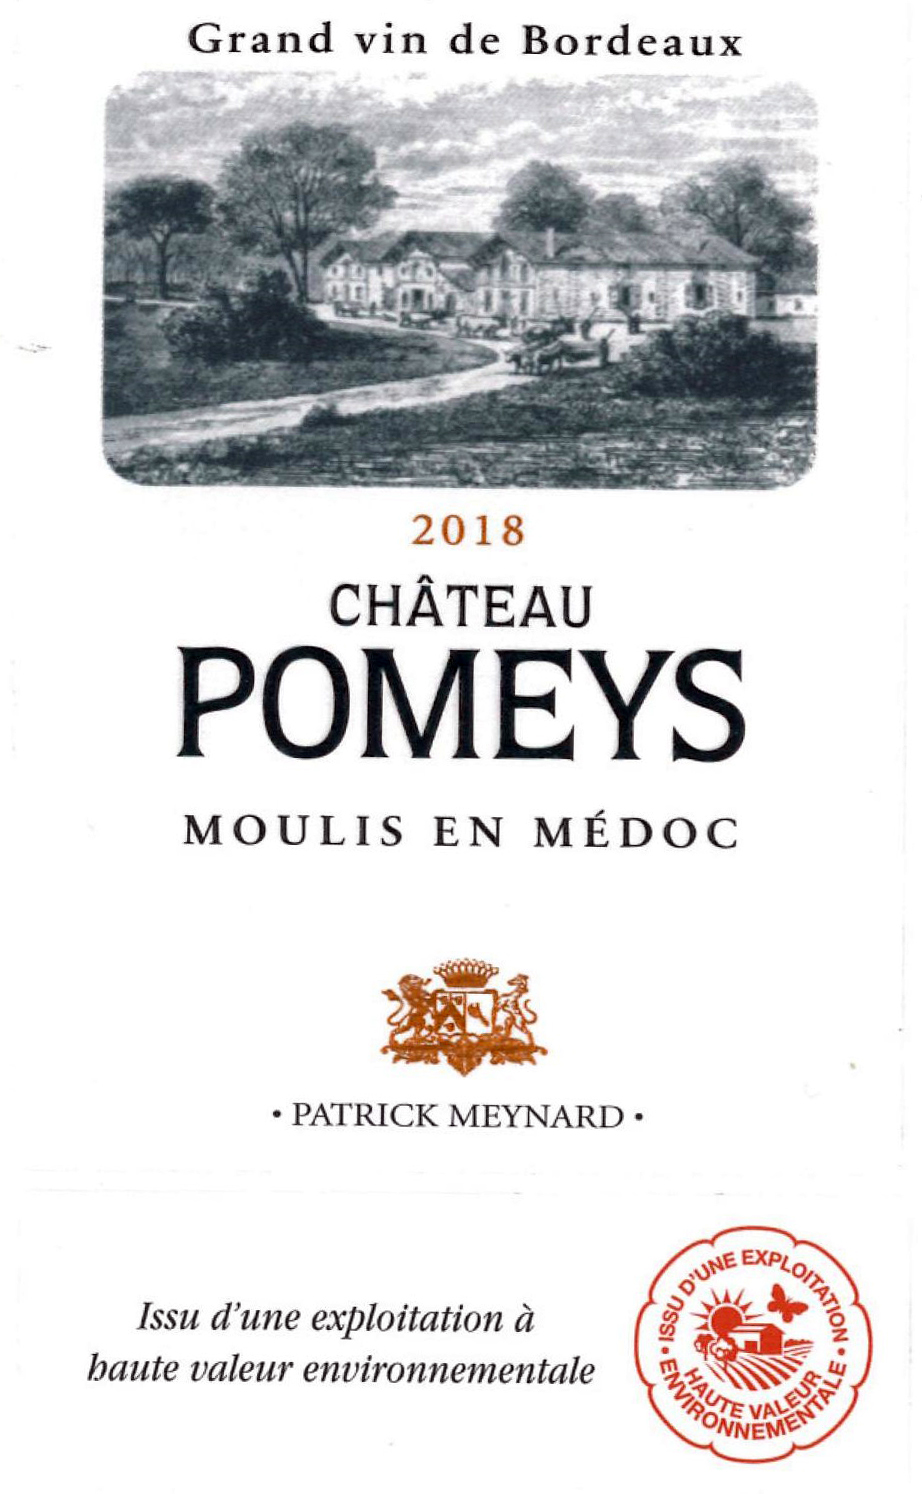 Château Pomeys AOC Moulis en Médoc Red 2018